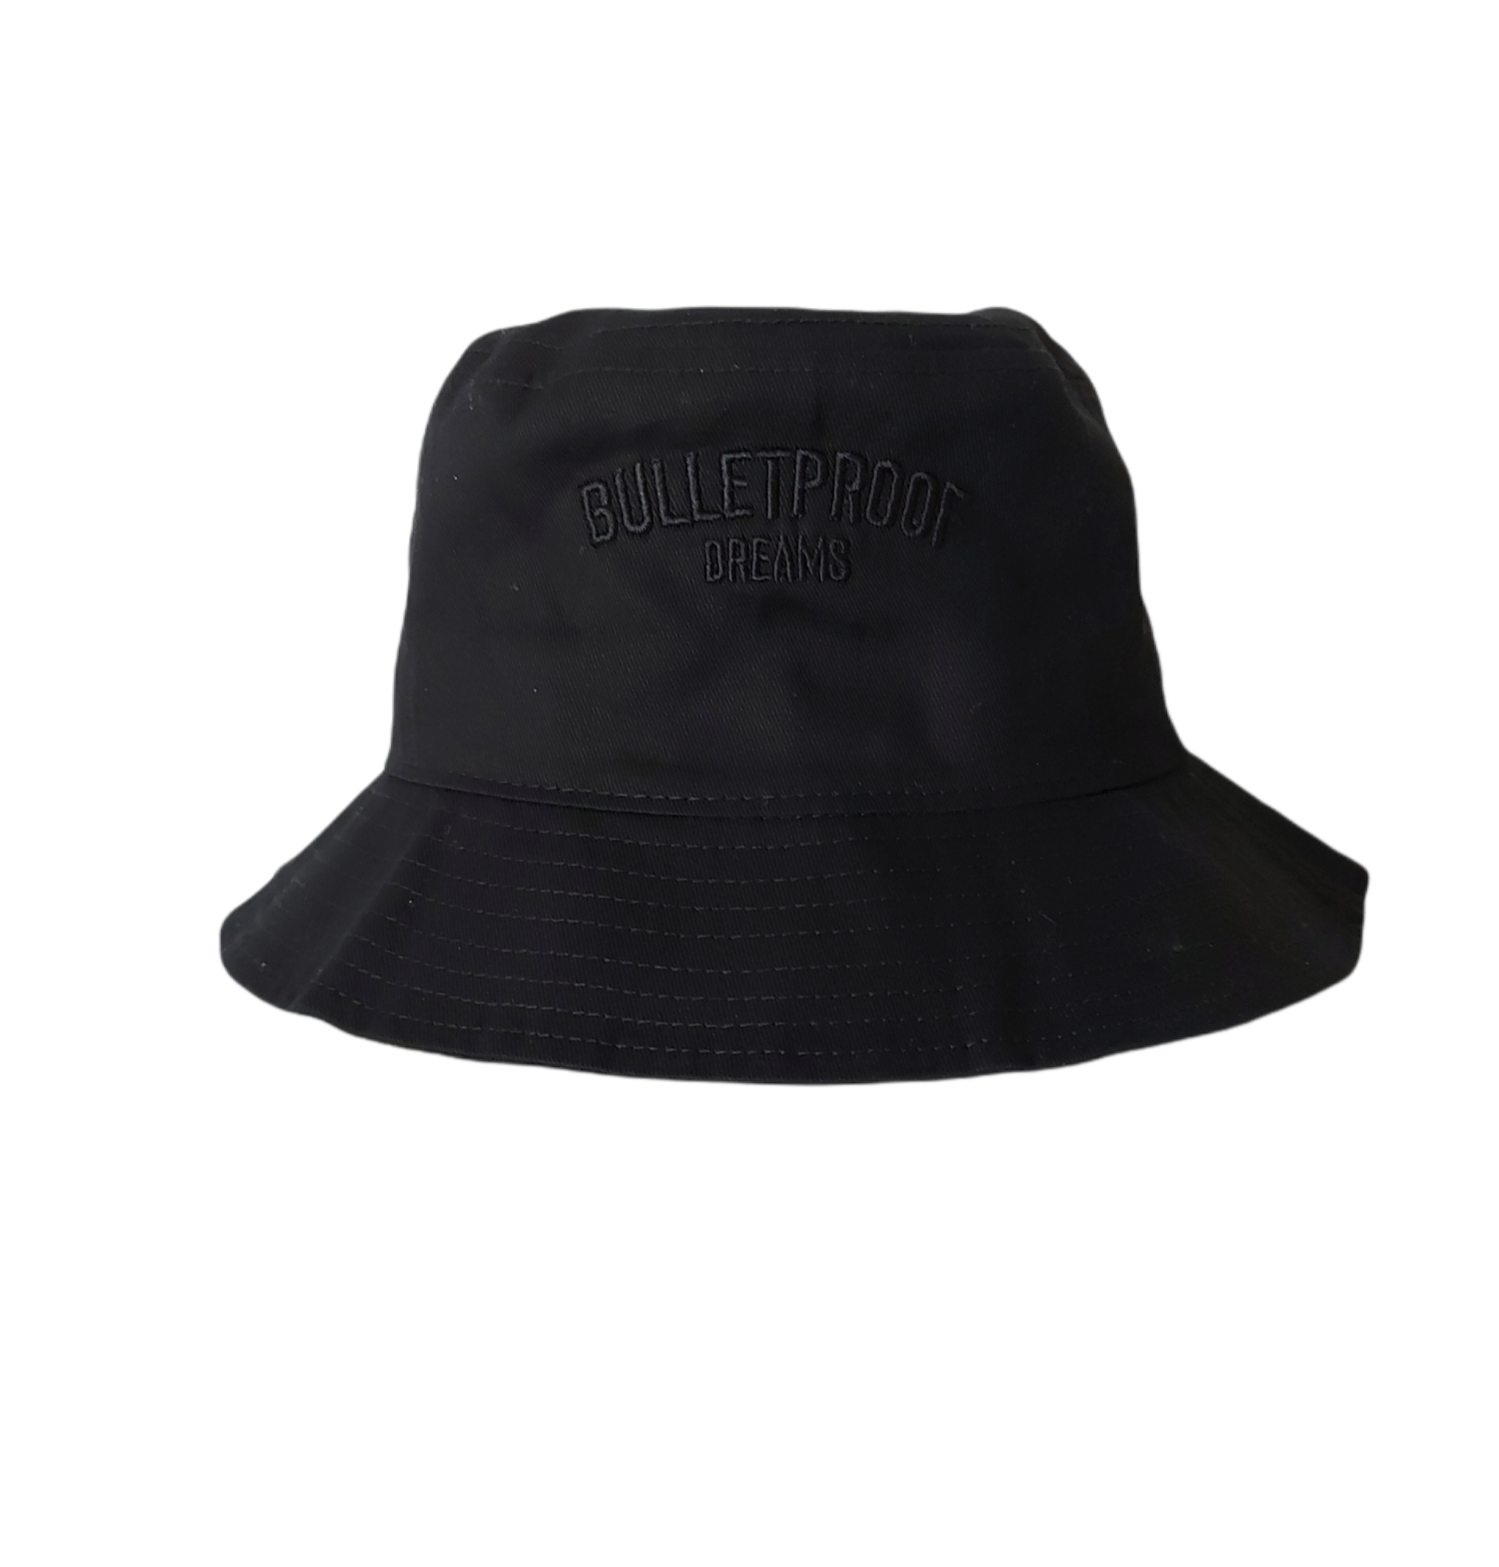 BPD - Bucket Hat Black on Black - Bulletproof Dreams